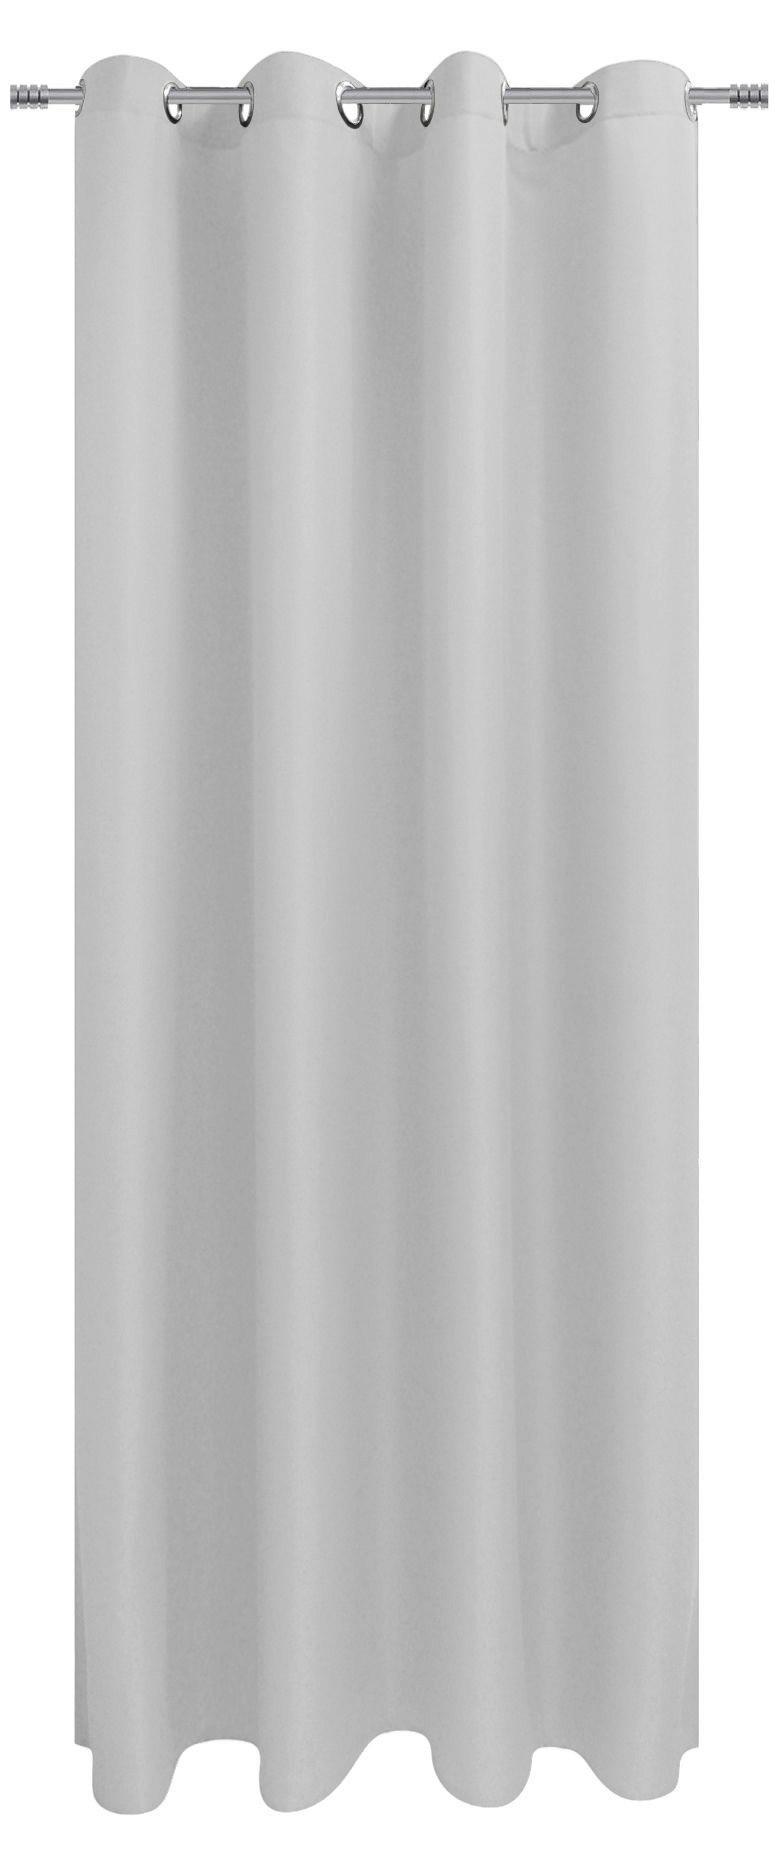 Ringlis Függöny Isolde - Fehér, konvencionális, Textil (140/245cm) - Ondega